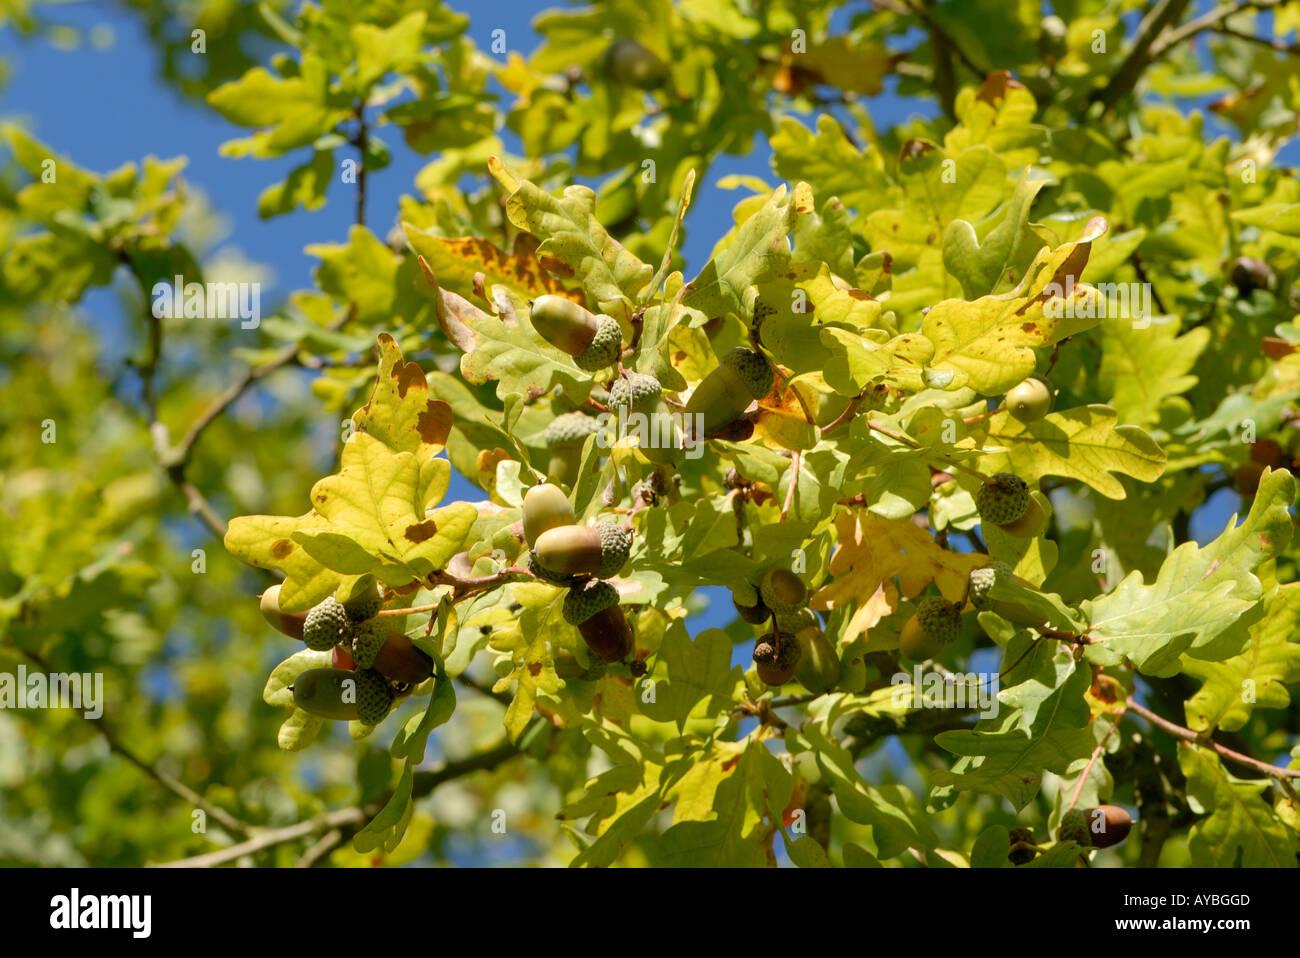 Reife Eicheln Samen der Pedunculate oder Stieleiche Quercus robur bereit, aus ihren Becher und Blätter im Herbst fallen Stockfoto